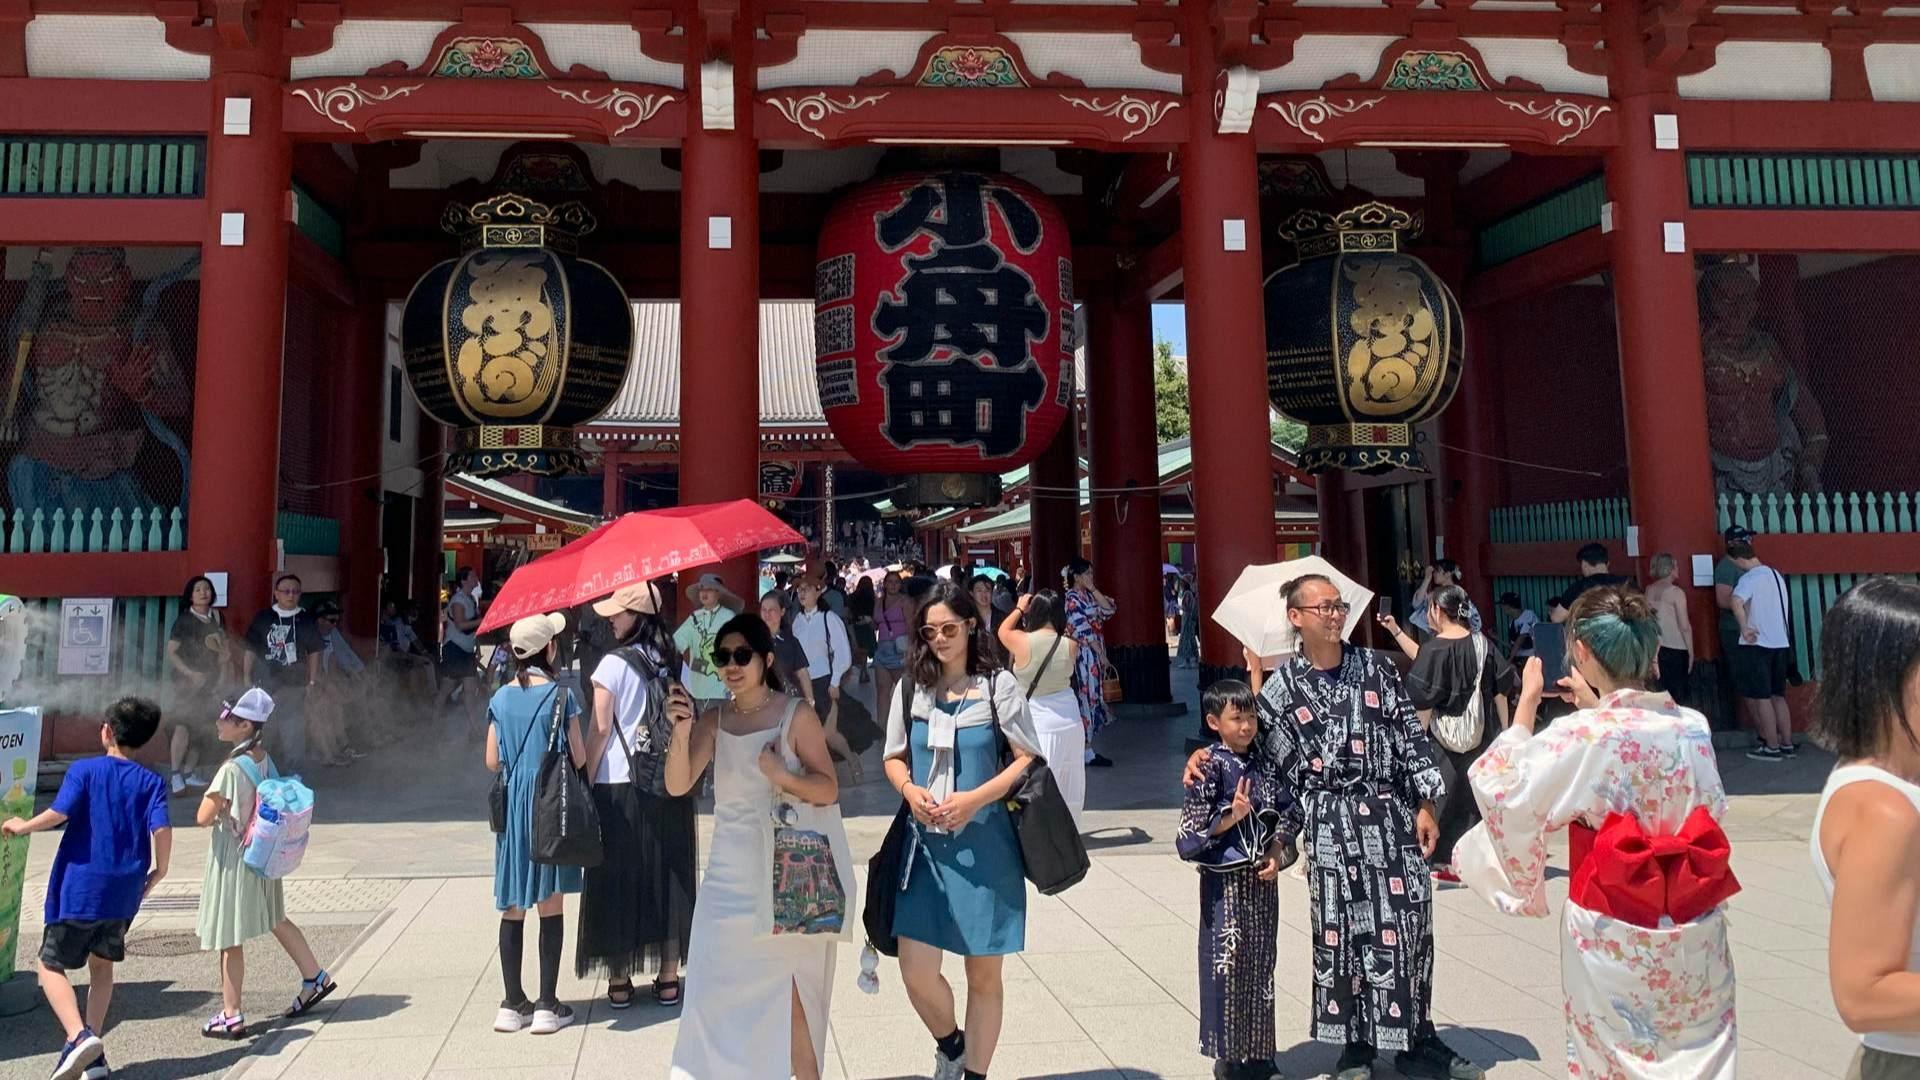 No Quieren Tantos Turistas: La Fuerte Medida en Japón para Frenar Visitantes